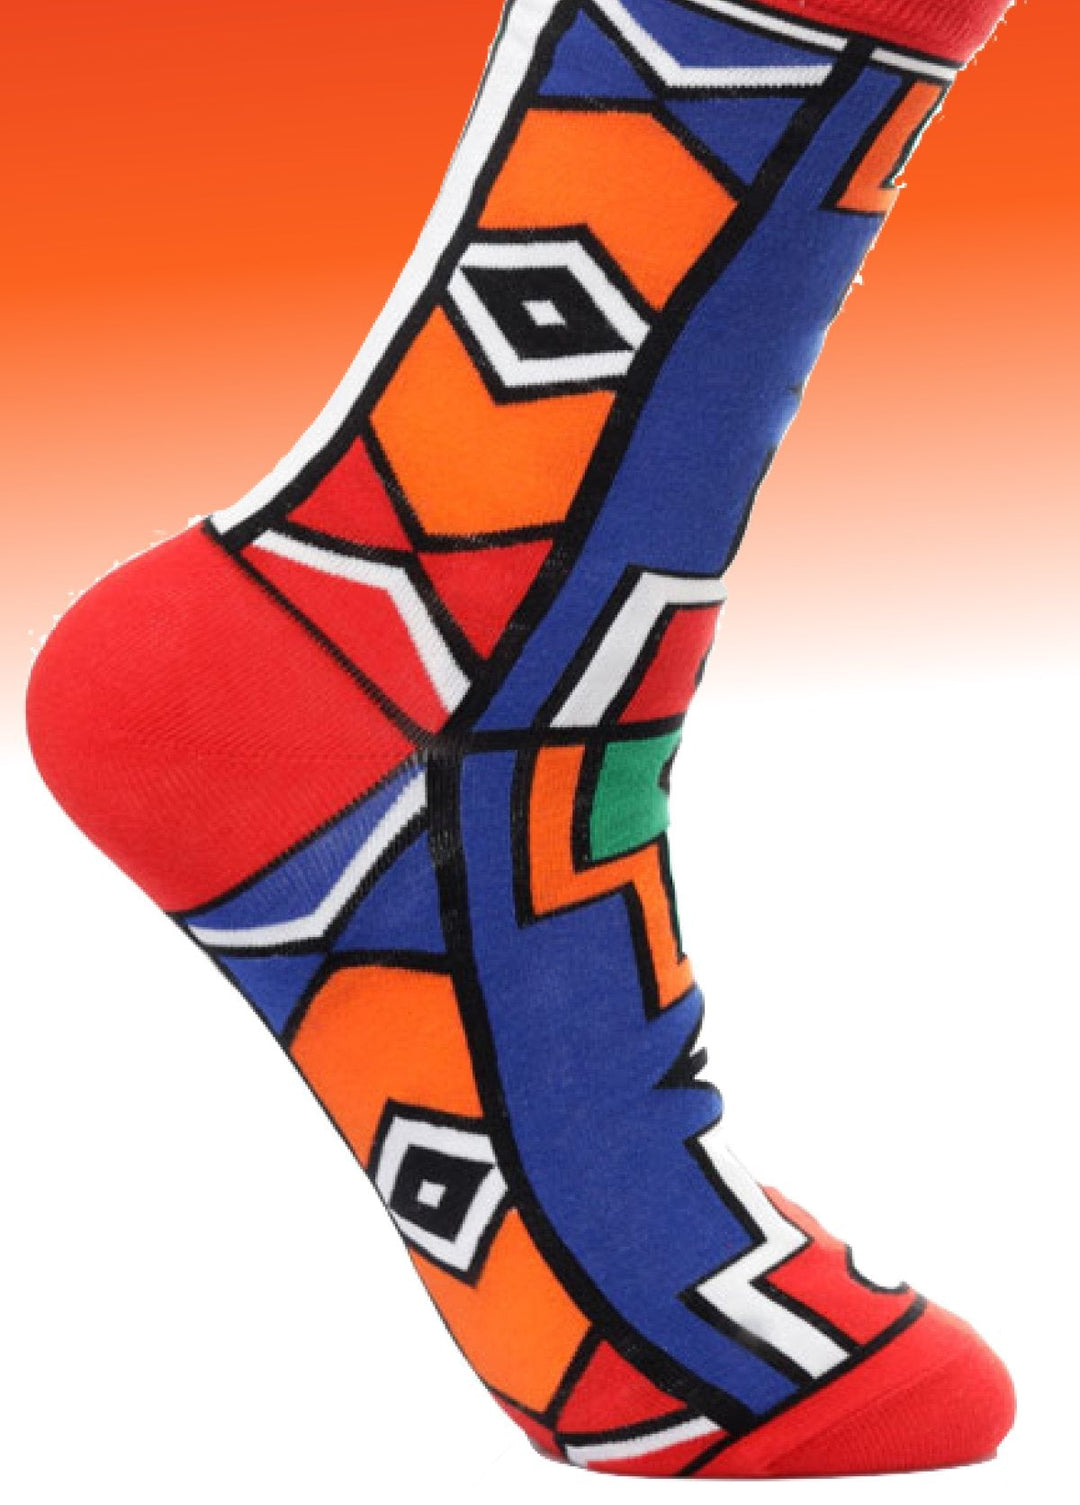 Socken aus Kenia ‚Jua‘ - mikono.africa Jacken aus Kenia bunte Bomberjacke Partyjacke faire sozial nachhaltig designed in Kenia